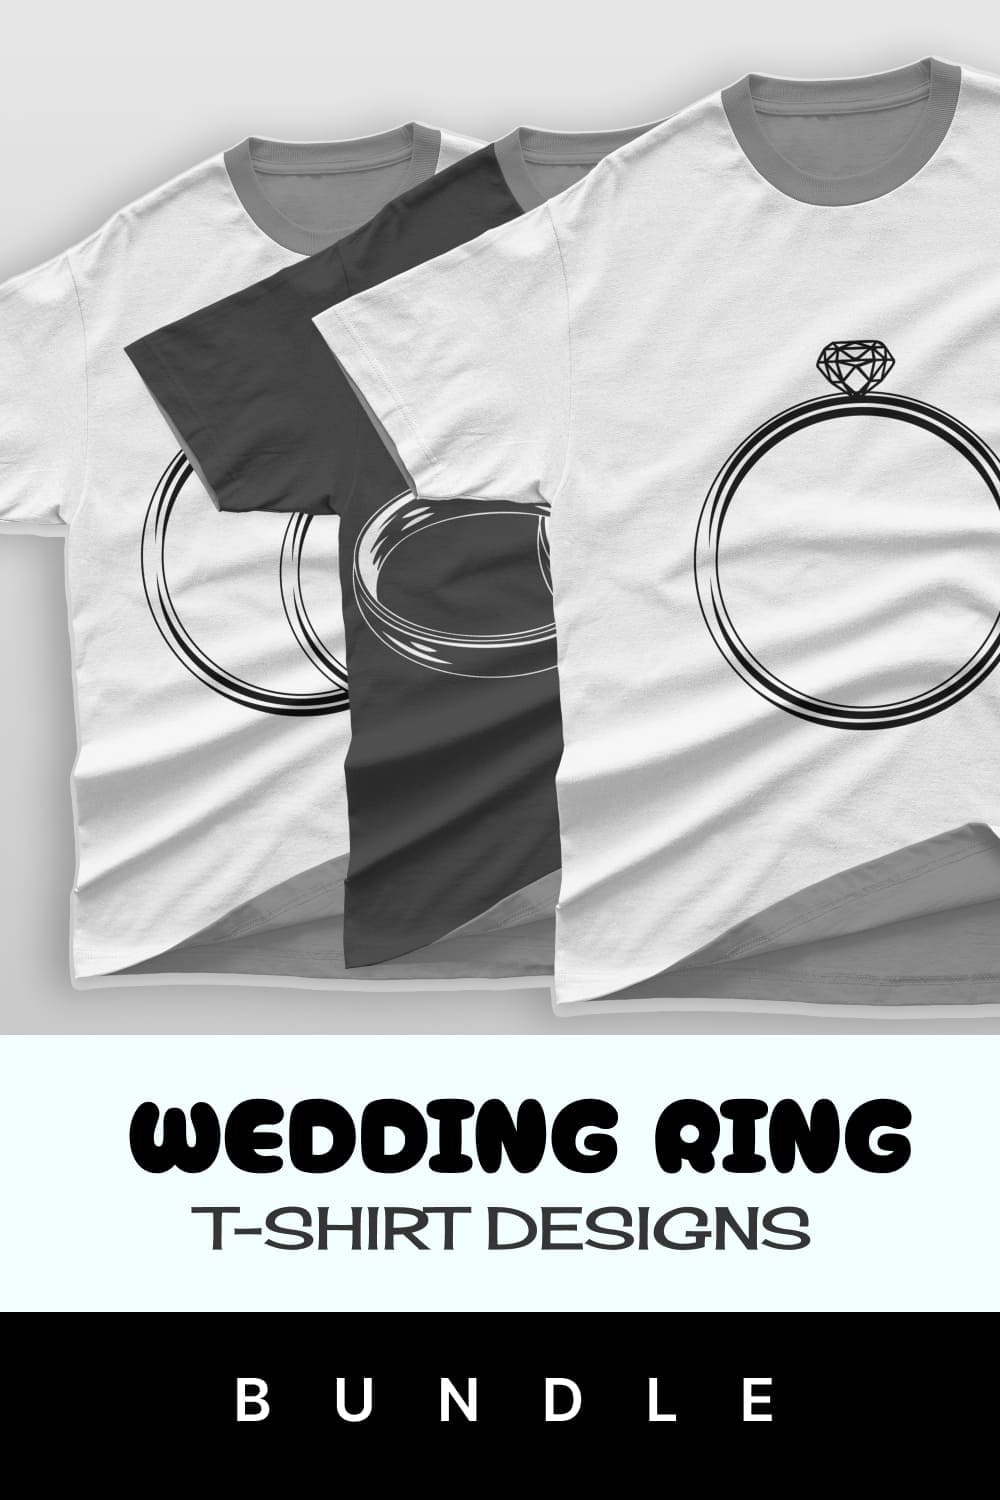 Wedding ring t-shirt designs bundle.